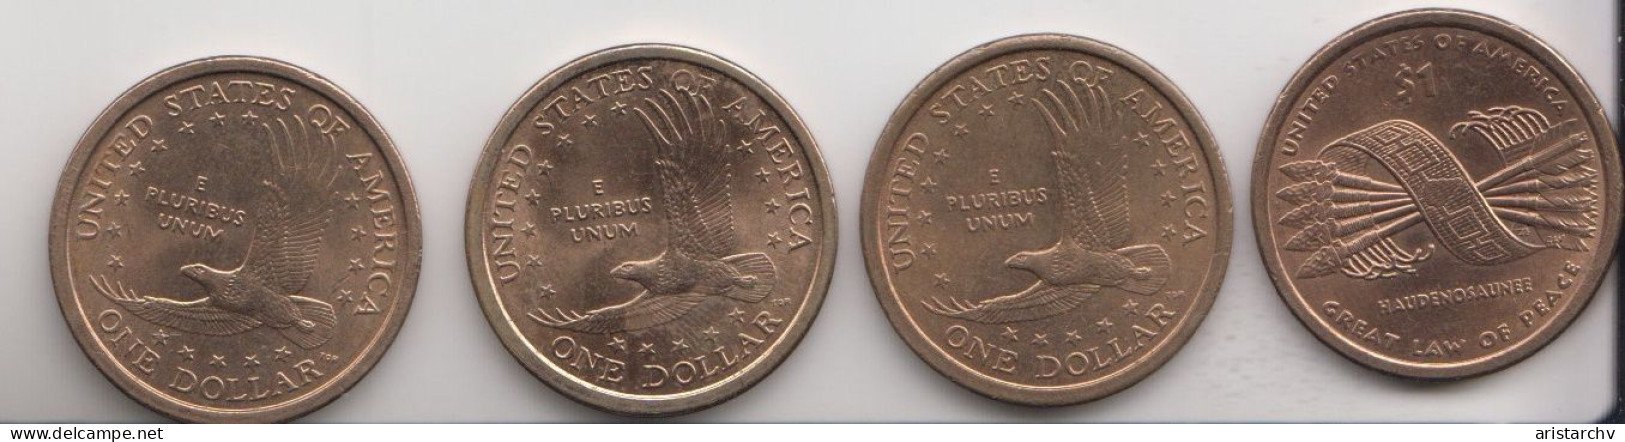 USA 2000 2001 1 $ DOLLAR SACAGAWEA EAGLE 4 DIFFERENT CIRCULATED COINS - 2000-…: Sacagawea